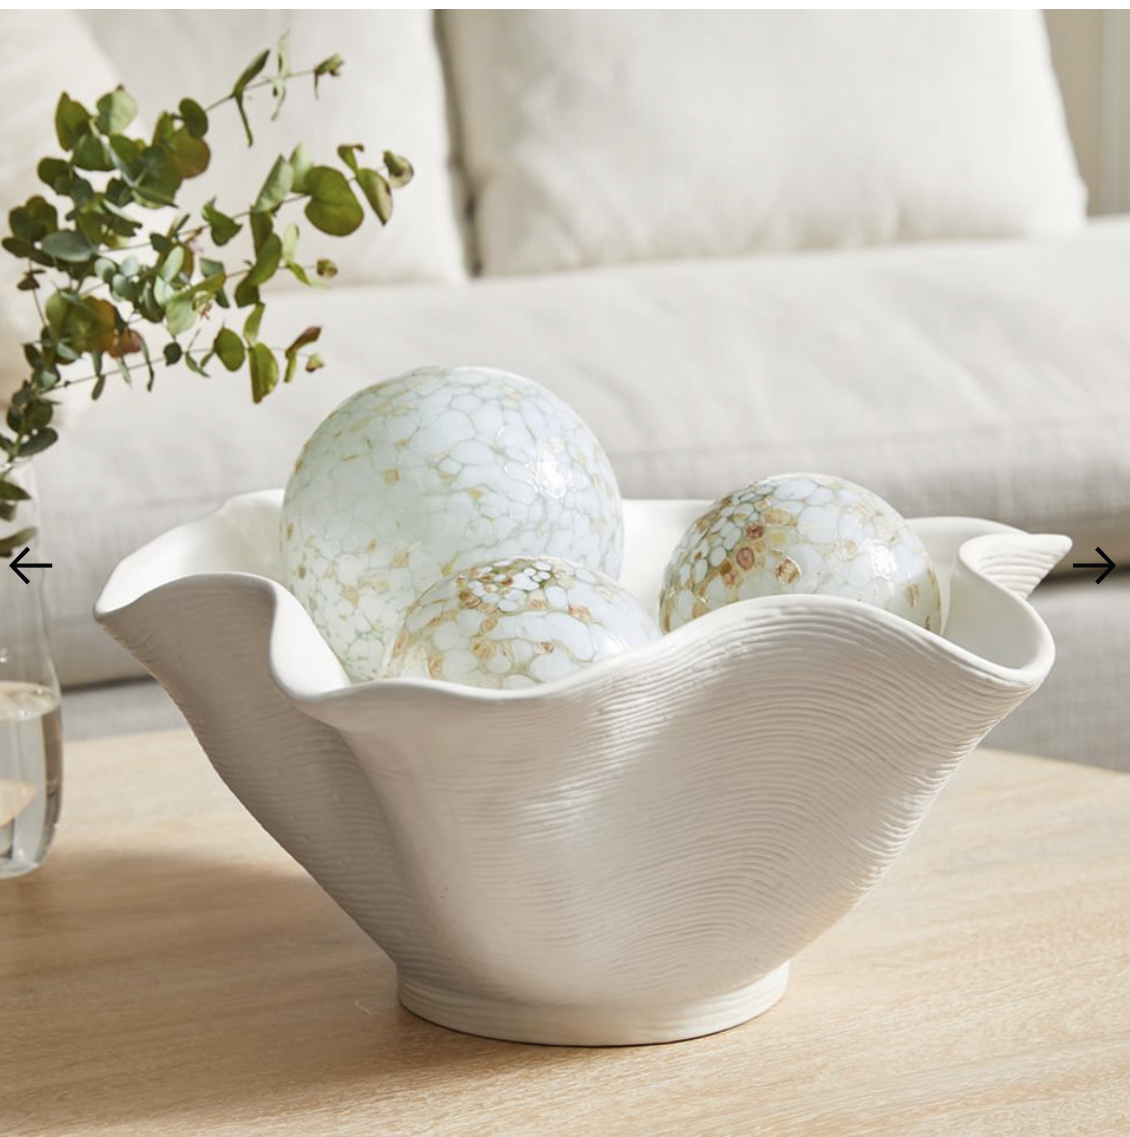 Solana Ceramic Centrepiece Bowl